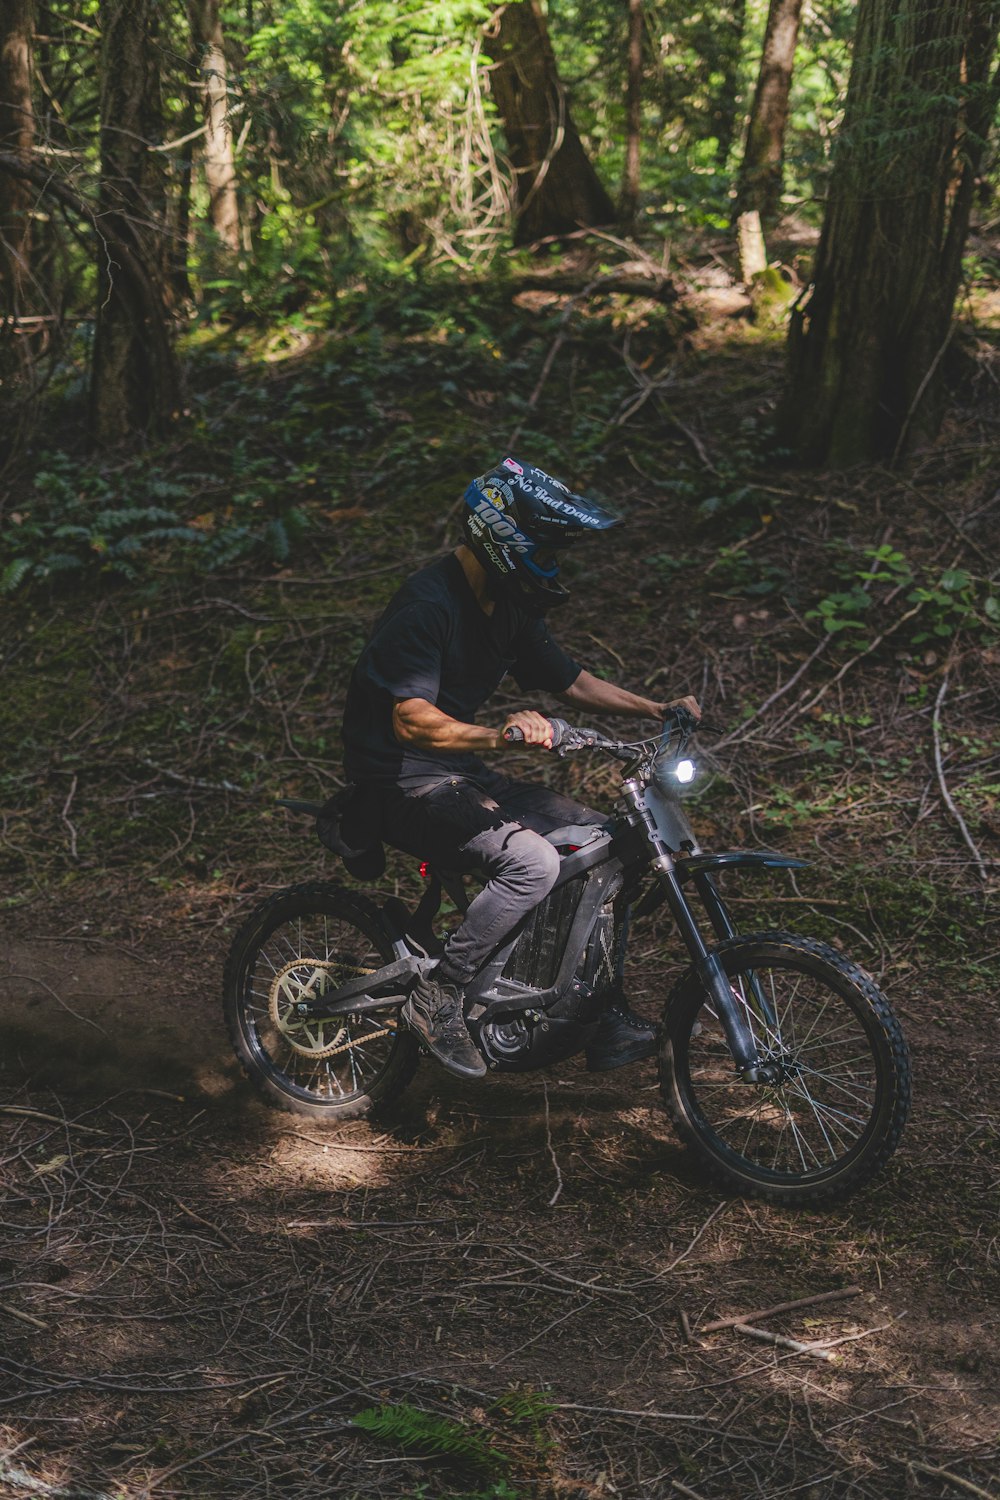 Un hombre montando una moto de cross a través de un bosque